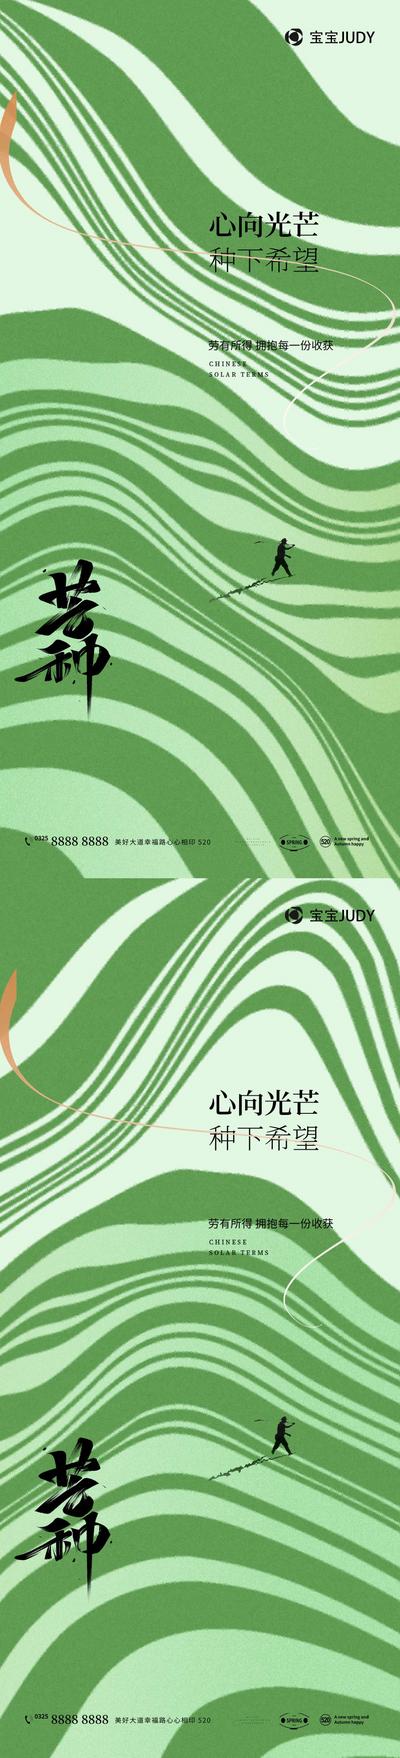 南门网 广告 海报 二十四节气 芒种 宣传 中国传统节日 夏天 中国二十四节气 24节气